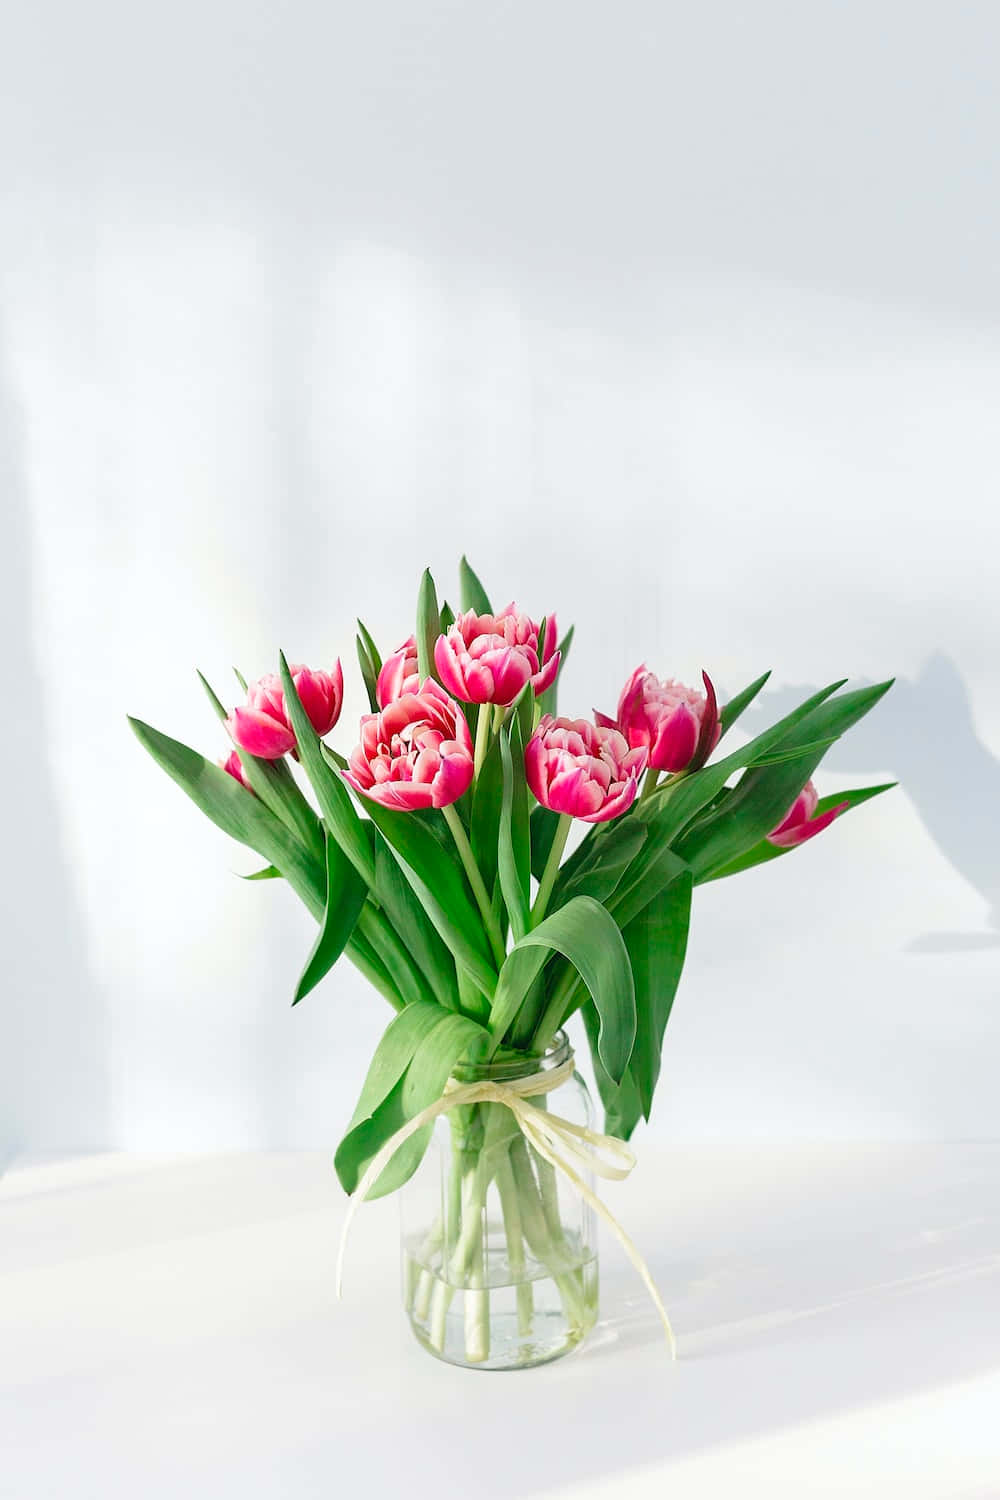 Erhellensie Ihren Frühling Mit Einer Farbenfrohen Tulpenblüte, Die Garantiert Jedem Blick Schönheit Verleiht.